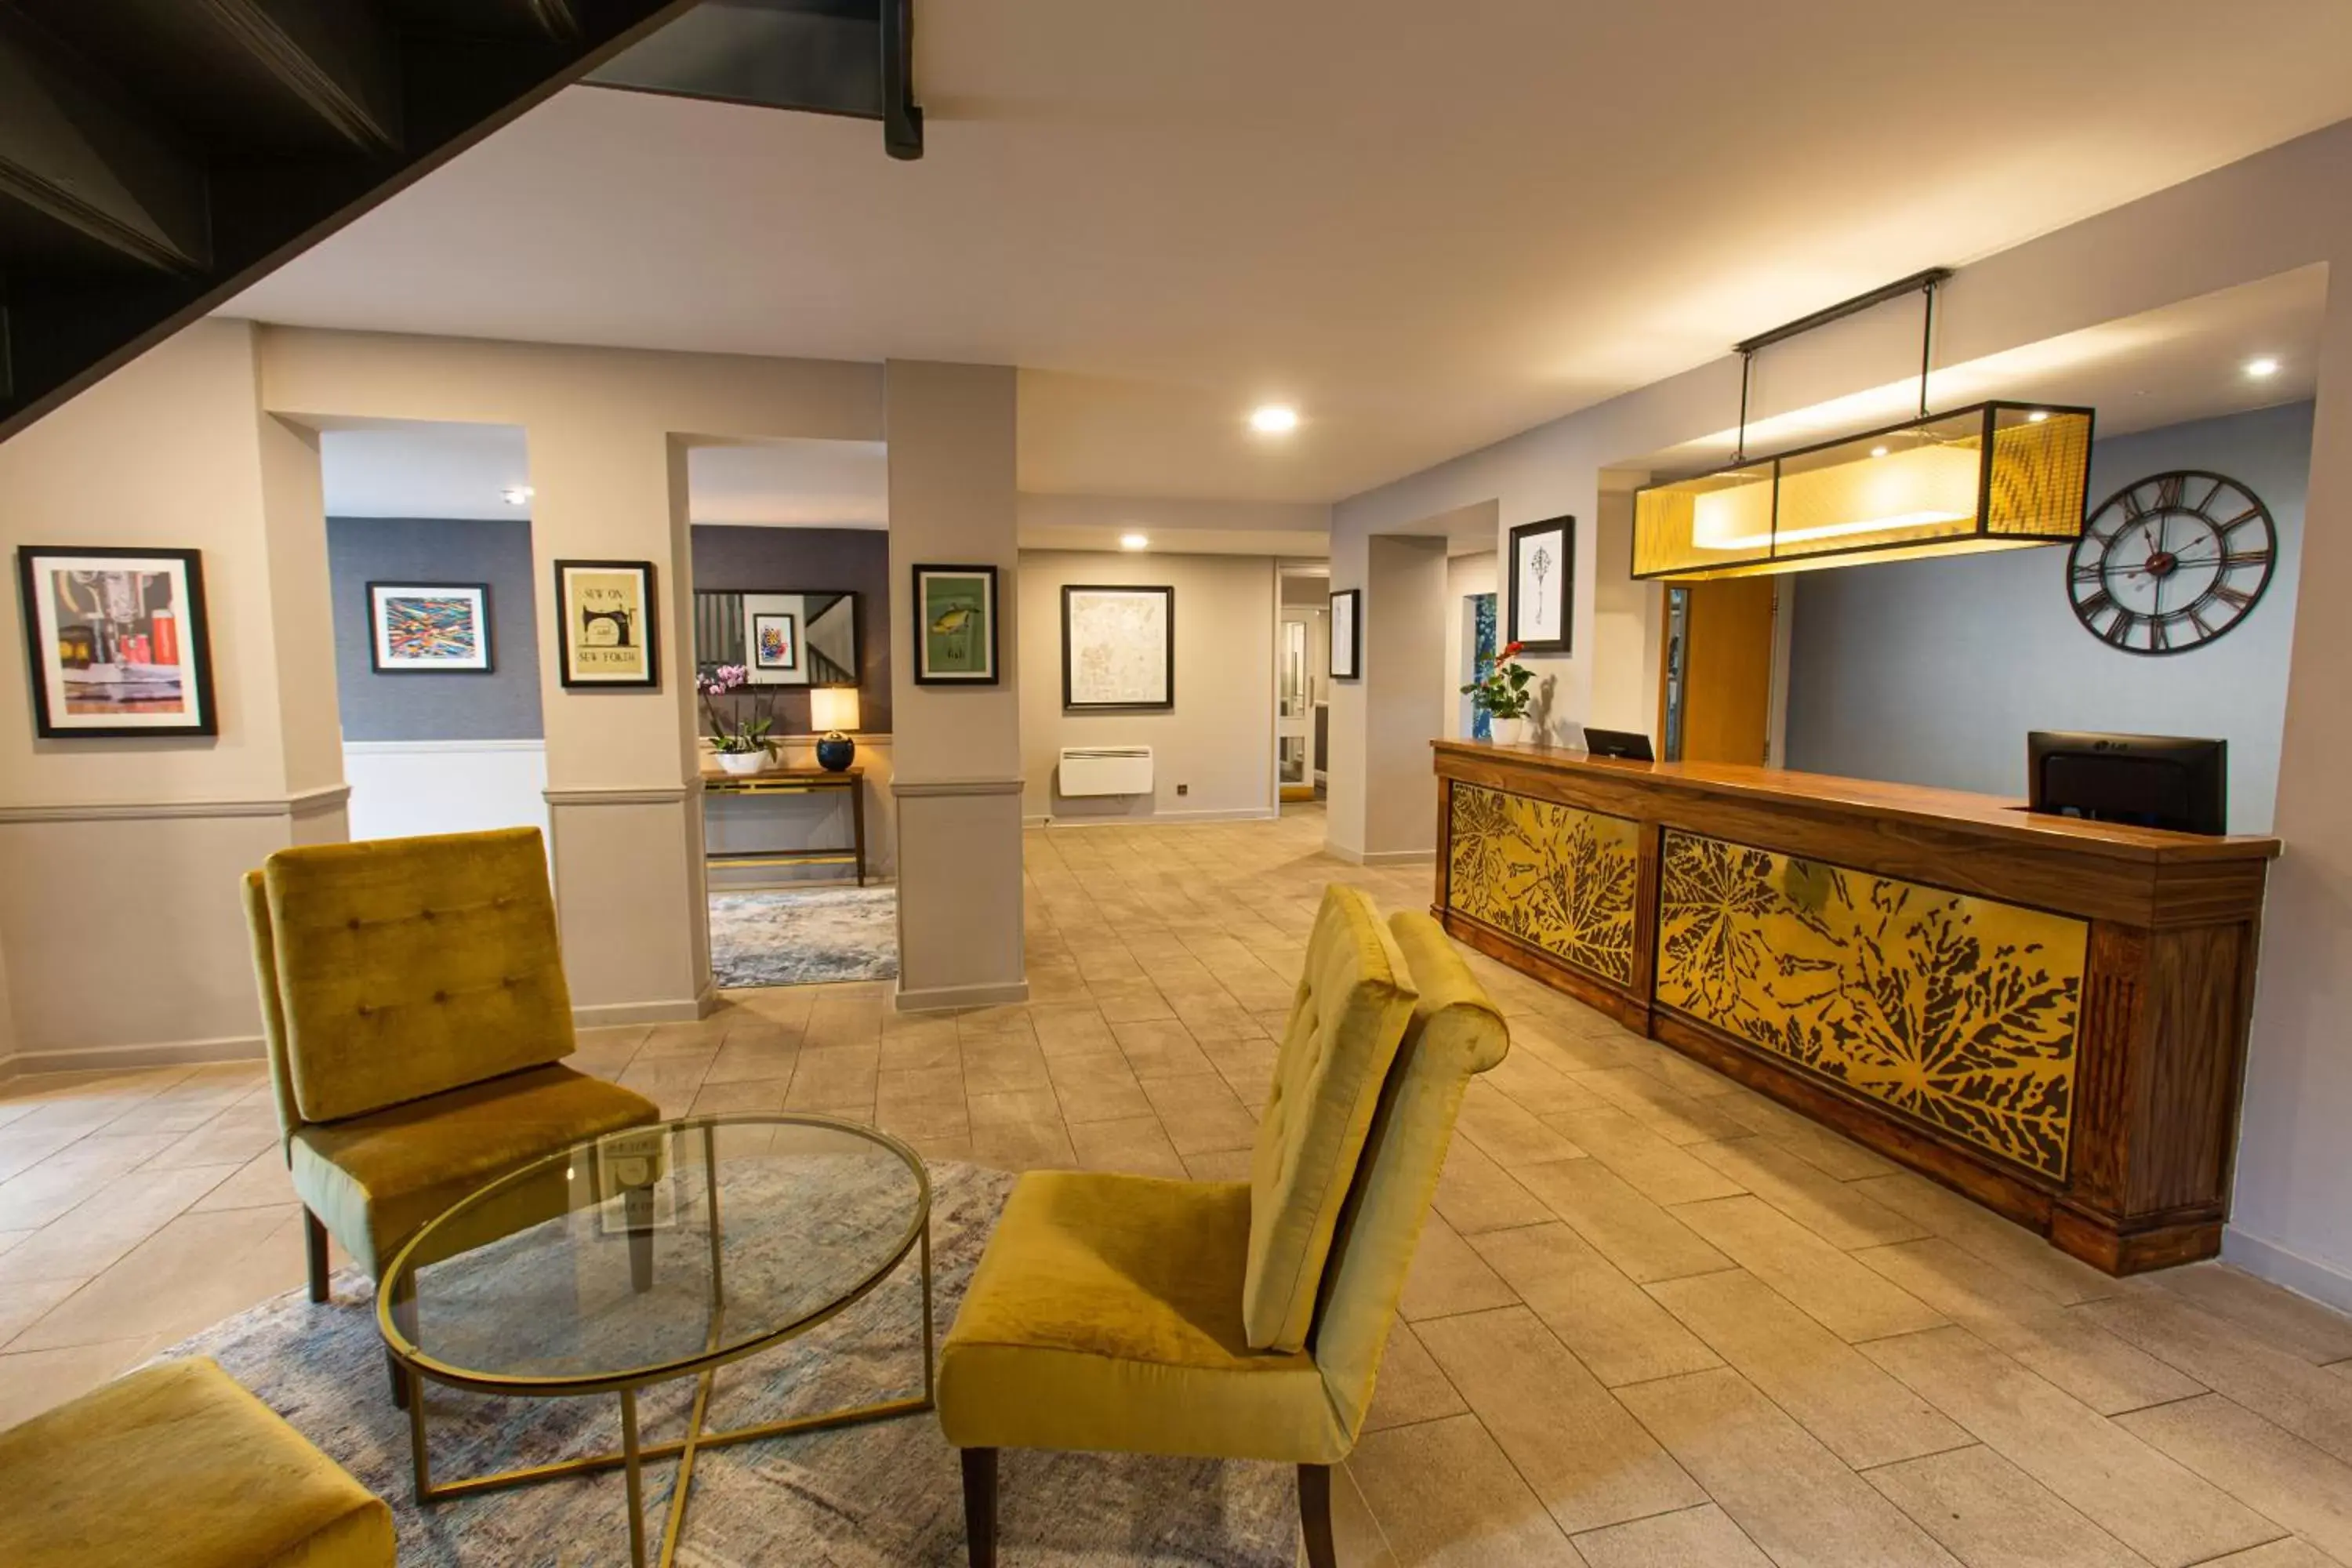 Lobby or reception, Lobby/Reception in Abbey Hotel Golf & Spa